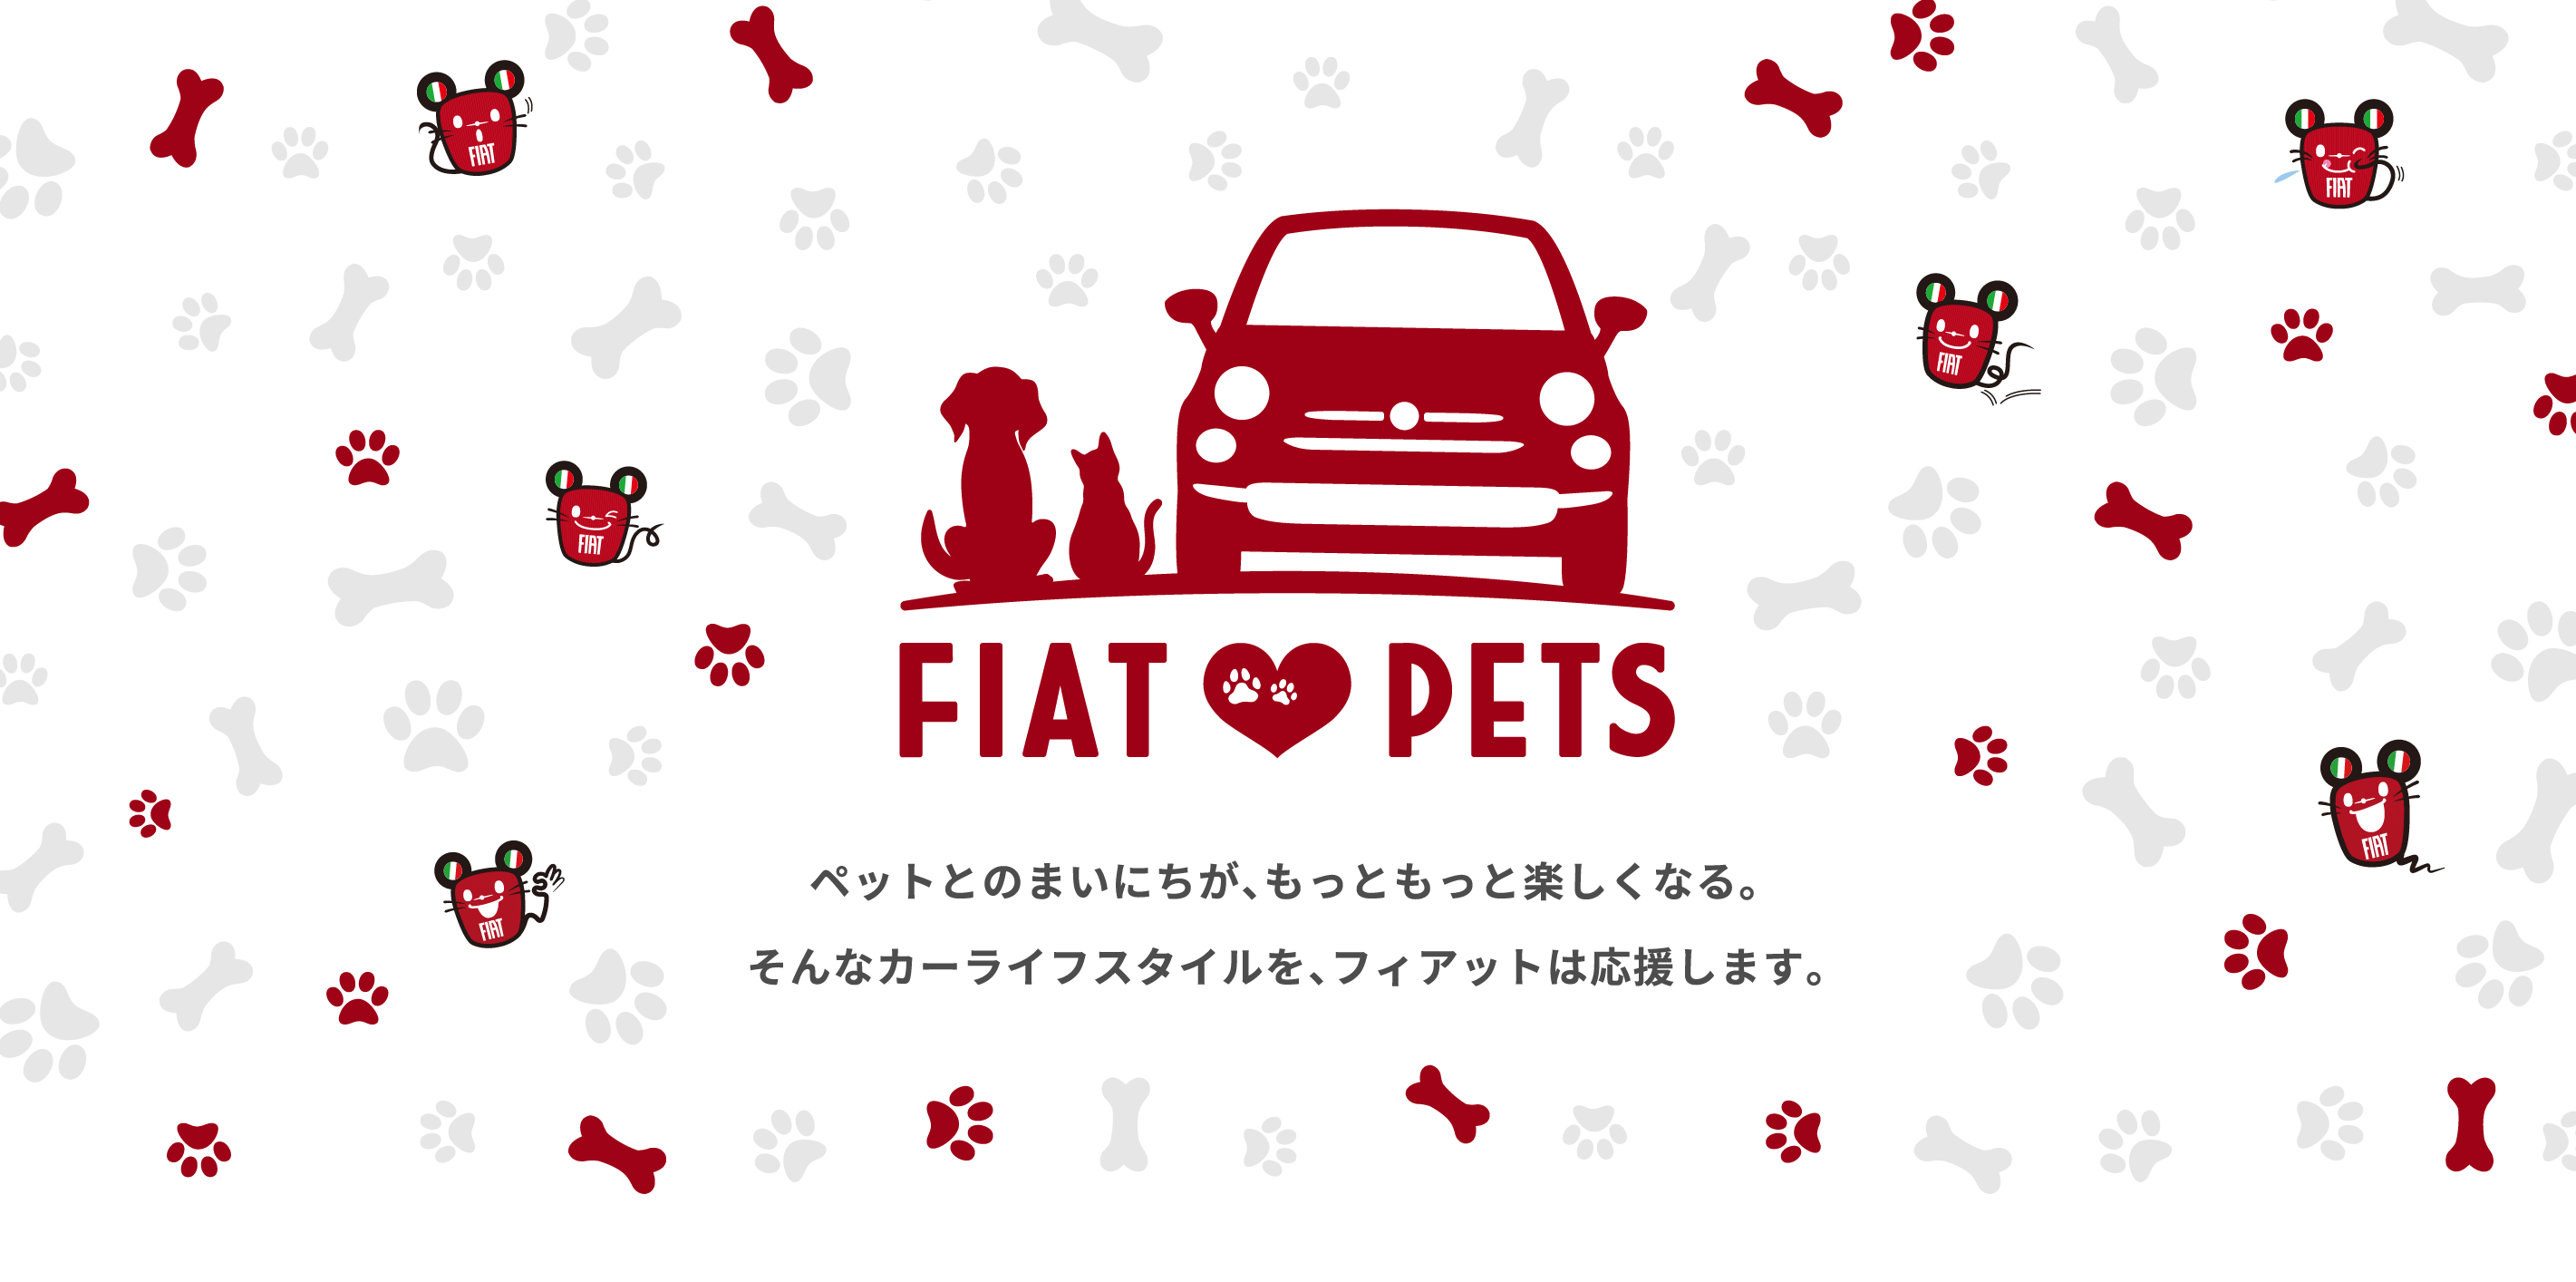 『FIAT LOVES PETS』ペットとのまいにちが、もっともっと楽しくなる。そんなカーライフスタイルを、フィアットは応援します。